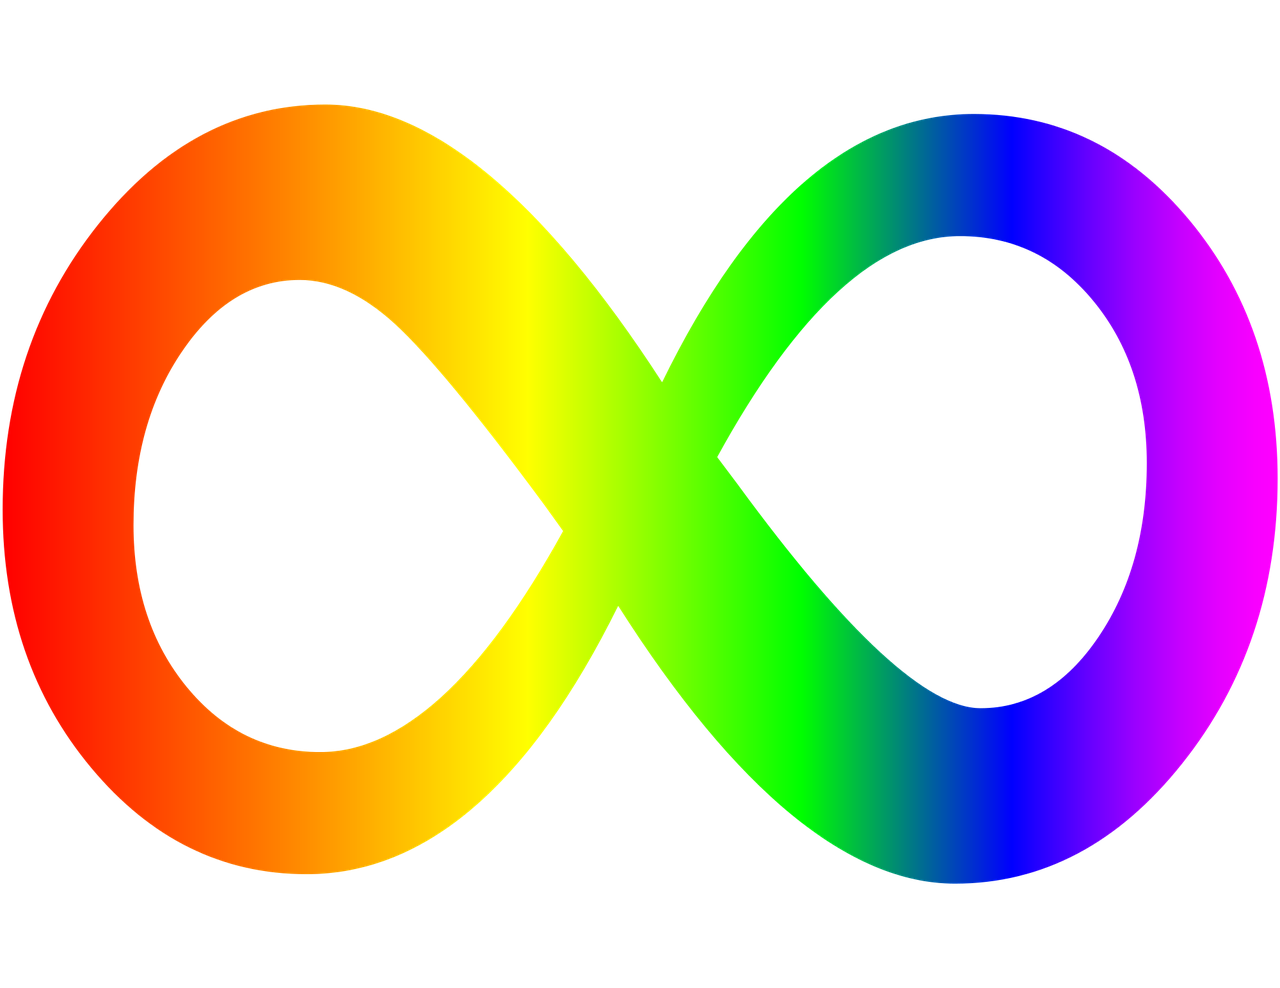 symbol-of-infinity-of-autism-